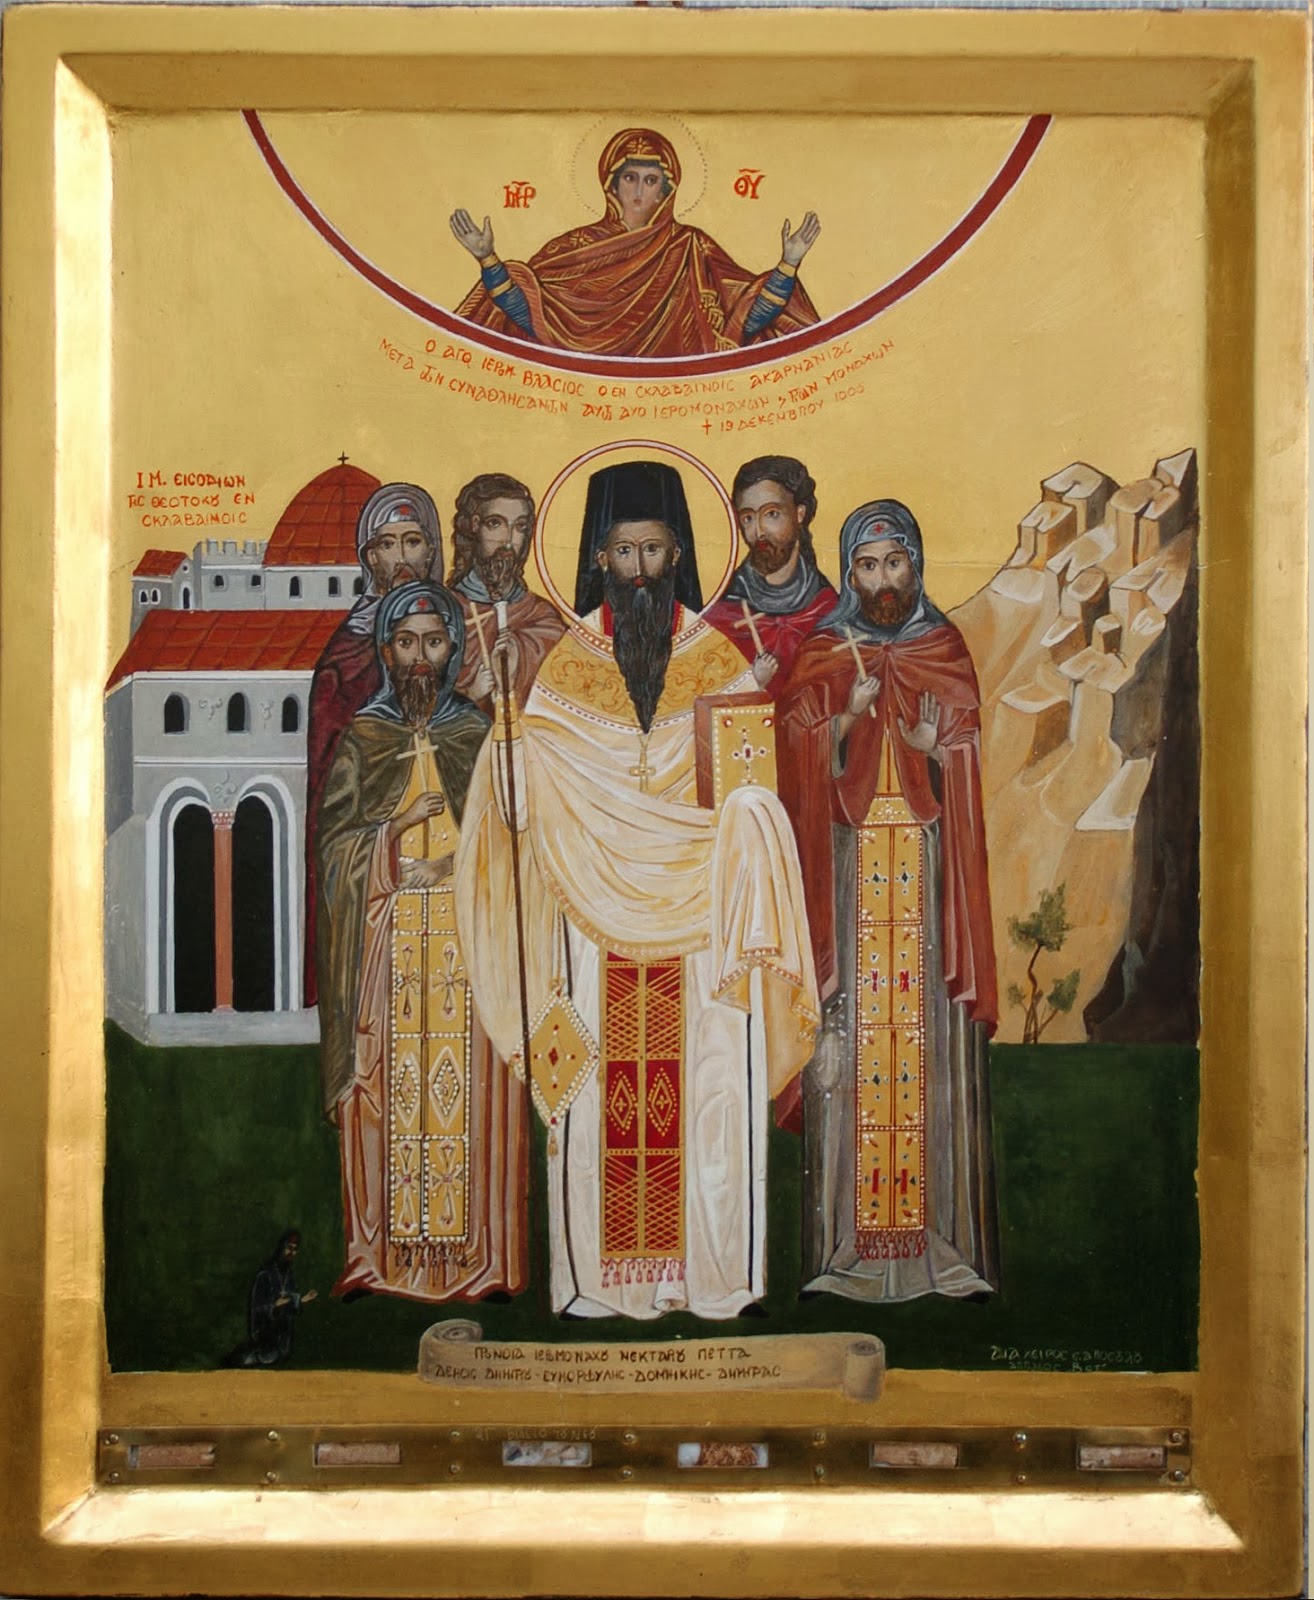 Εικόνα του Αγίου Βλασίου του εν Σκλαβαίνοις και των πέντε συμμοναστών του. Η εικόνα ενσωματώνει ιερά λείψανά στο κάτω μέρος.